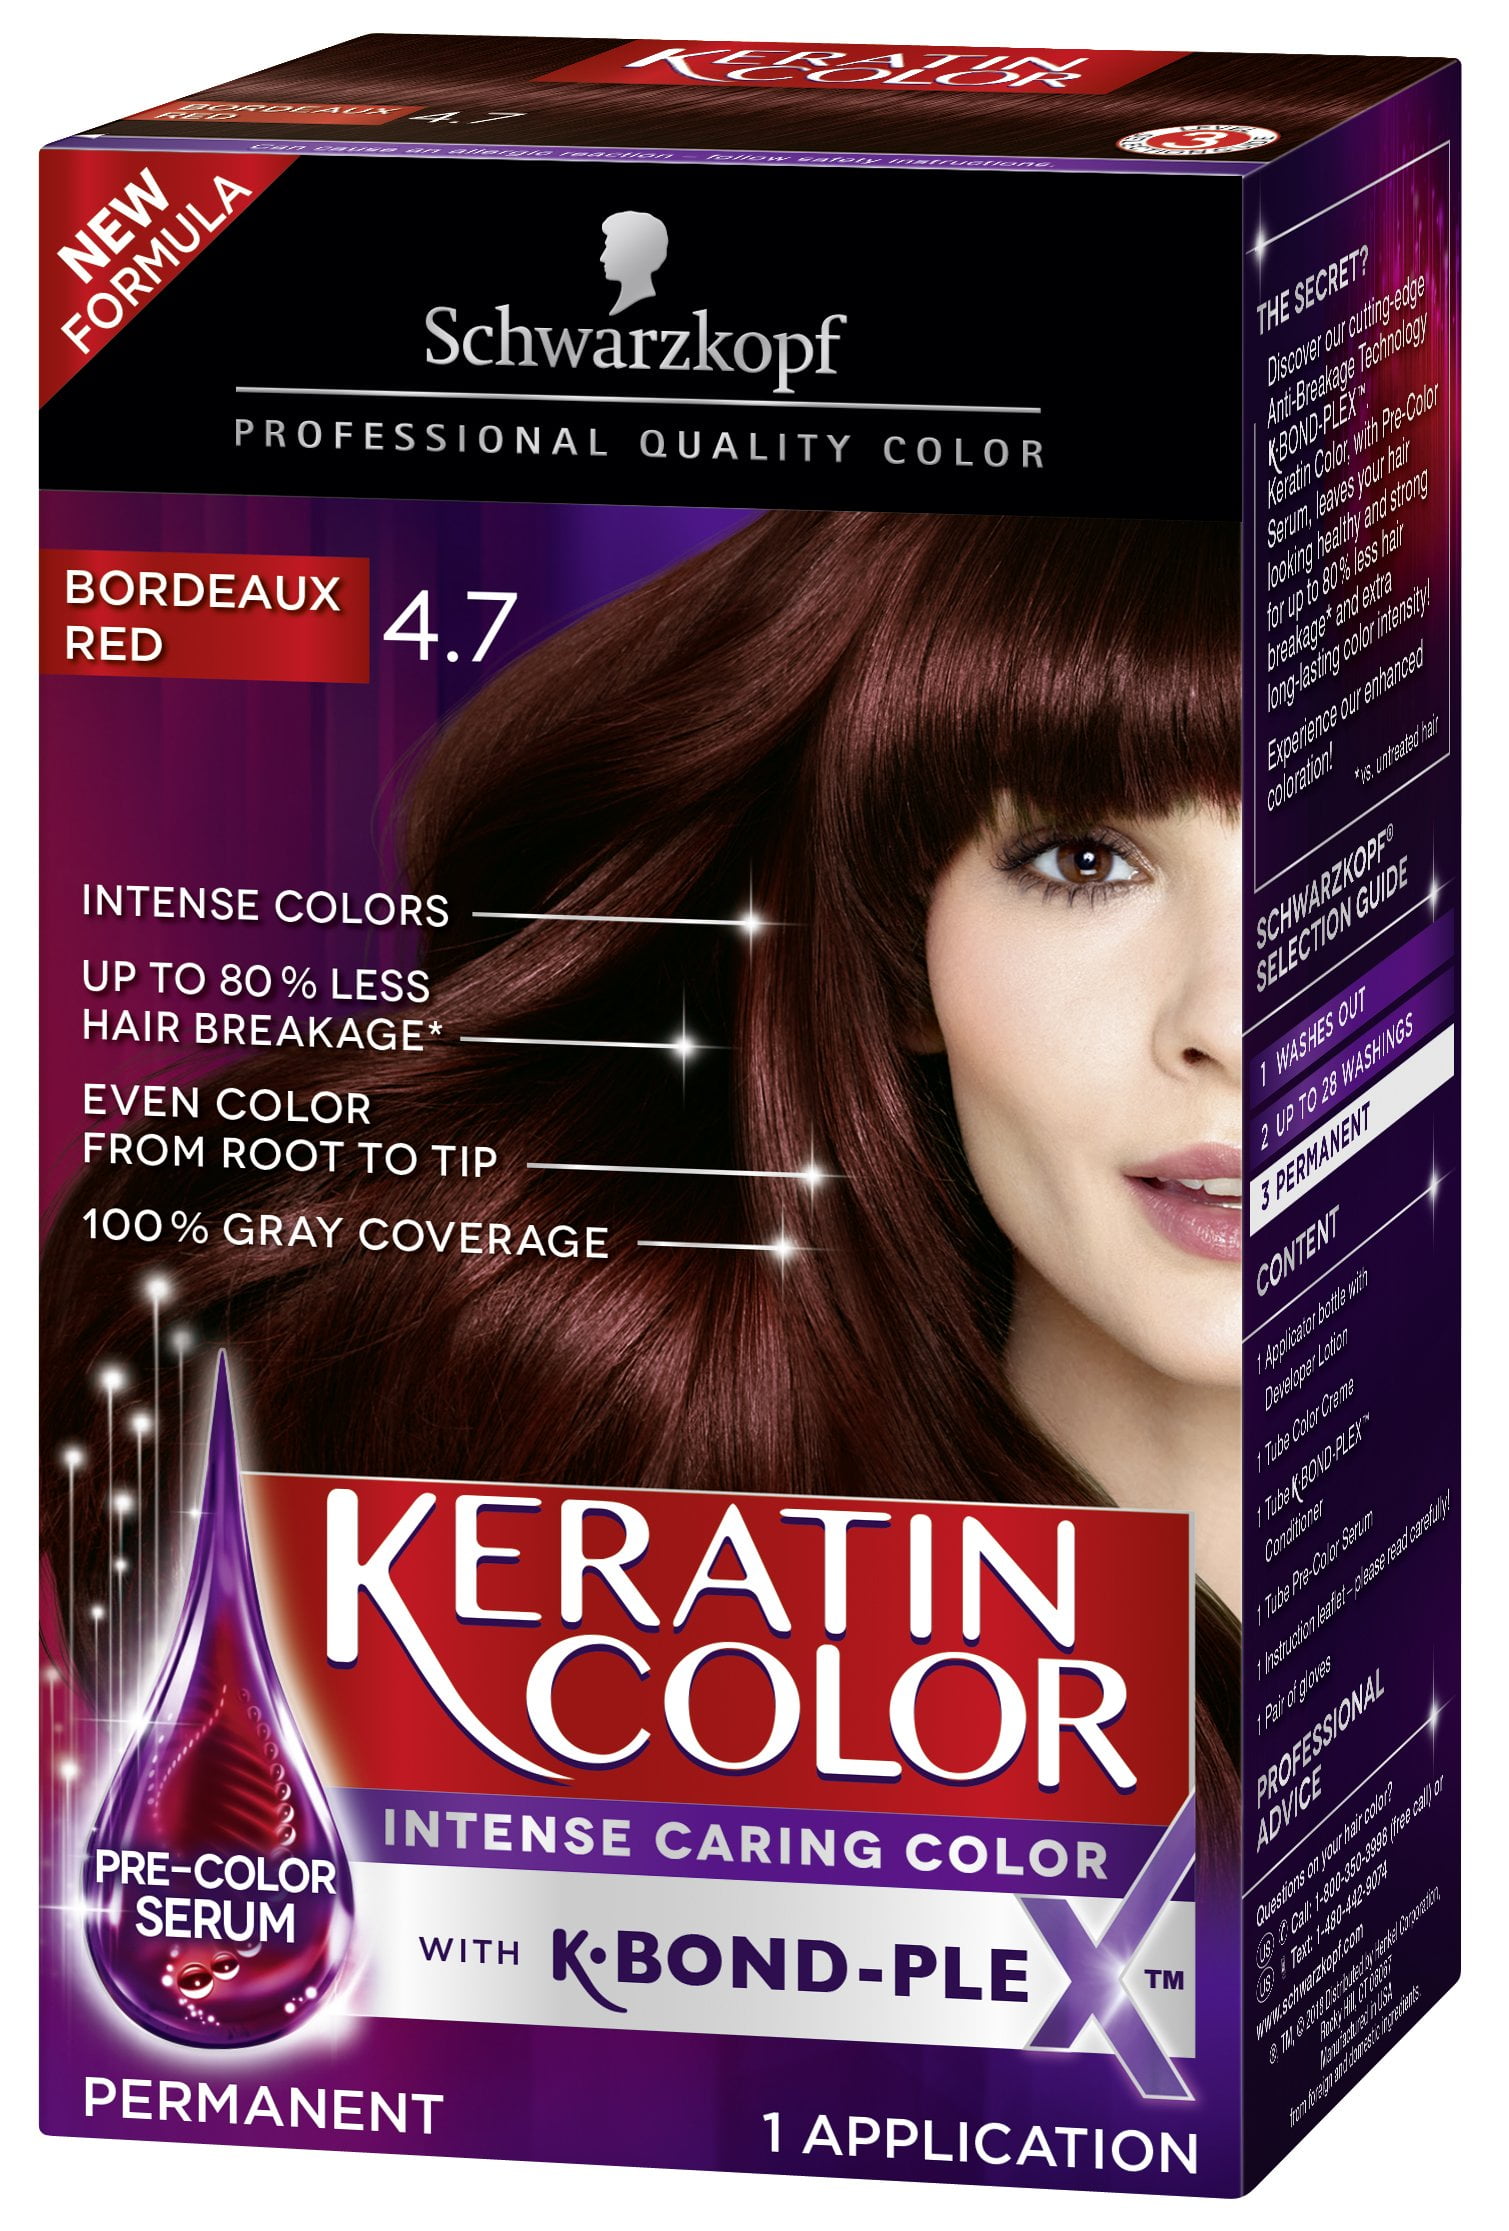 Schwarzkopf Framar Hair Color Tint Brush - RED you choose type